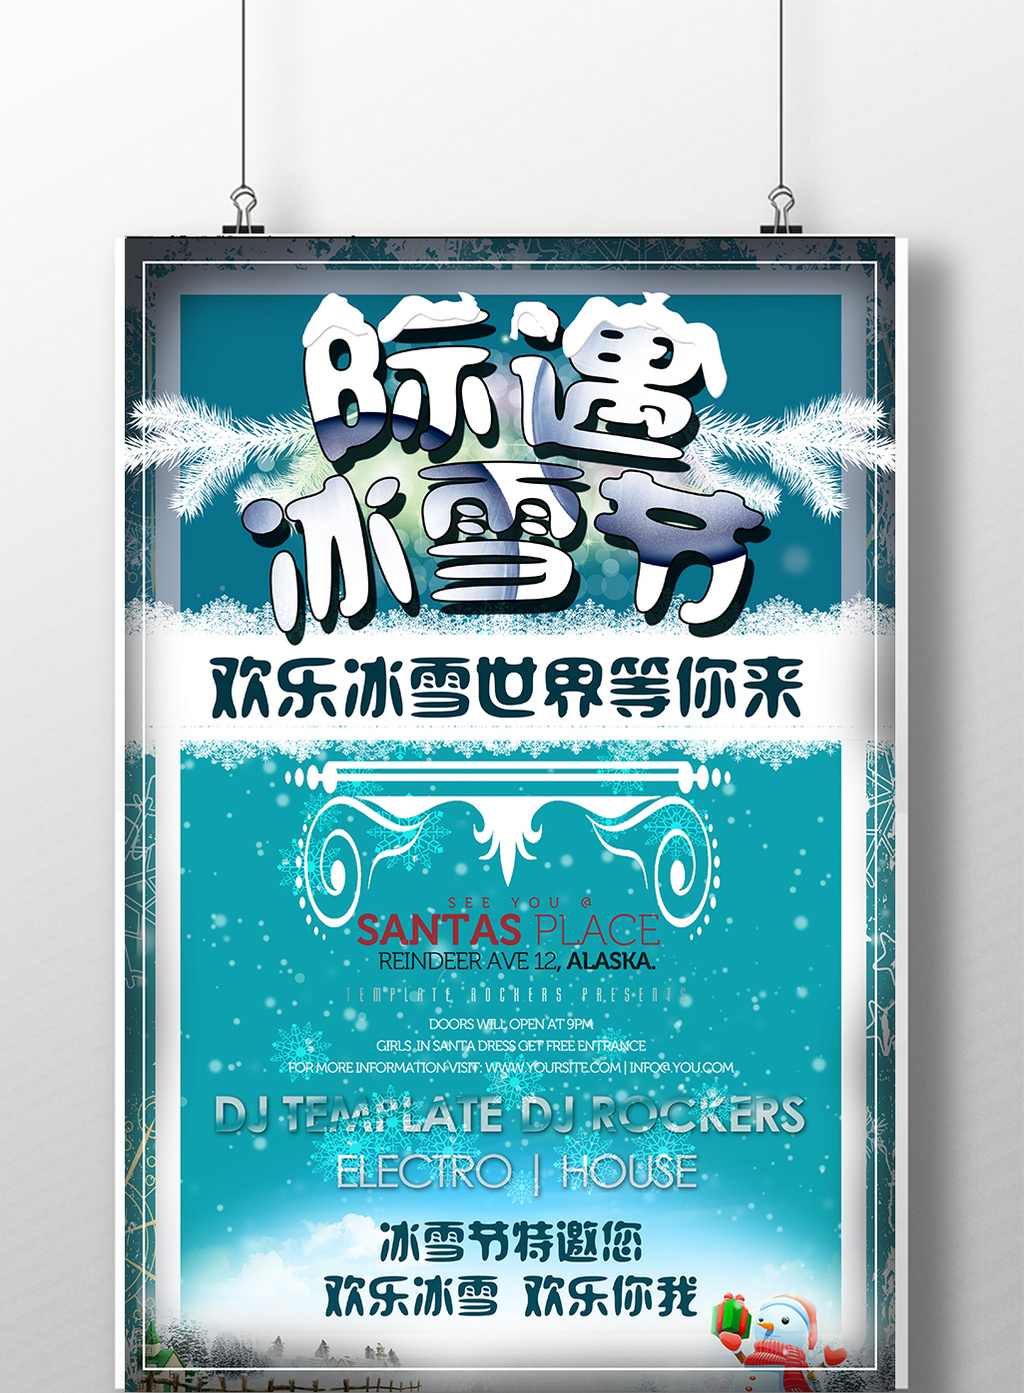 好看的冬季冰雪节宣传海报设计素材免费下载,本次作品主题是广告设计图片